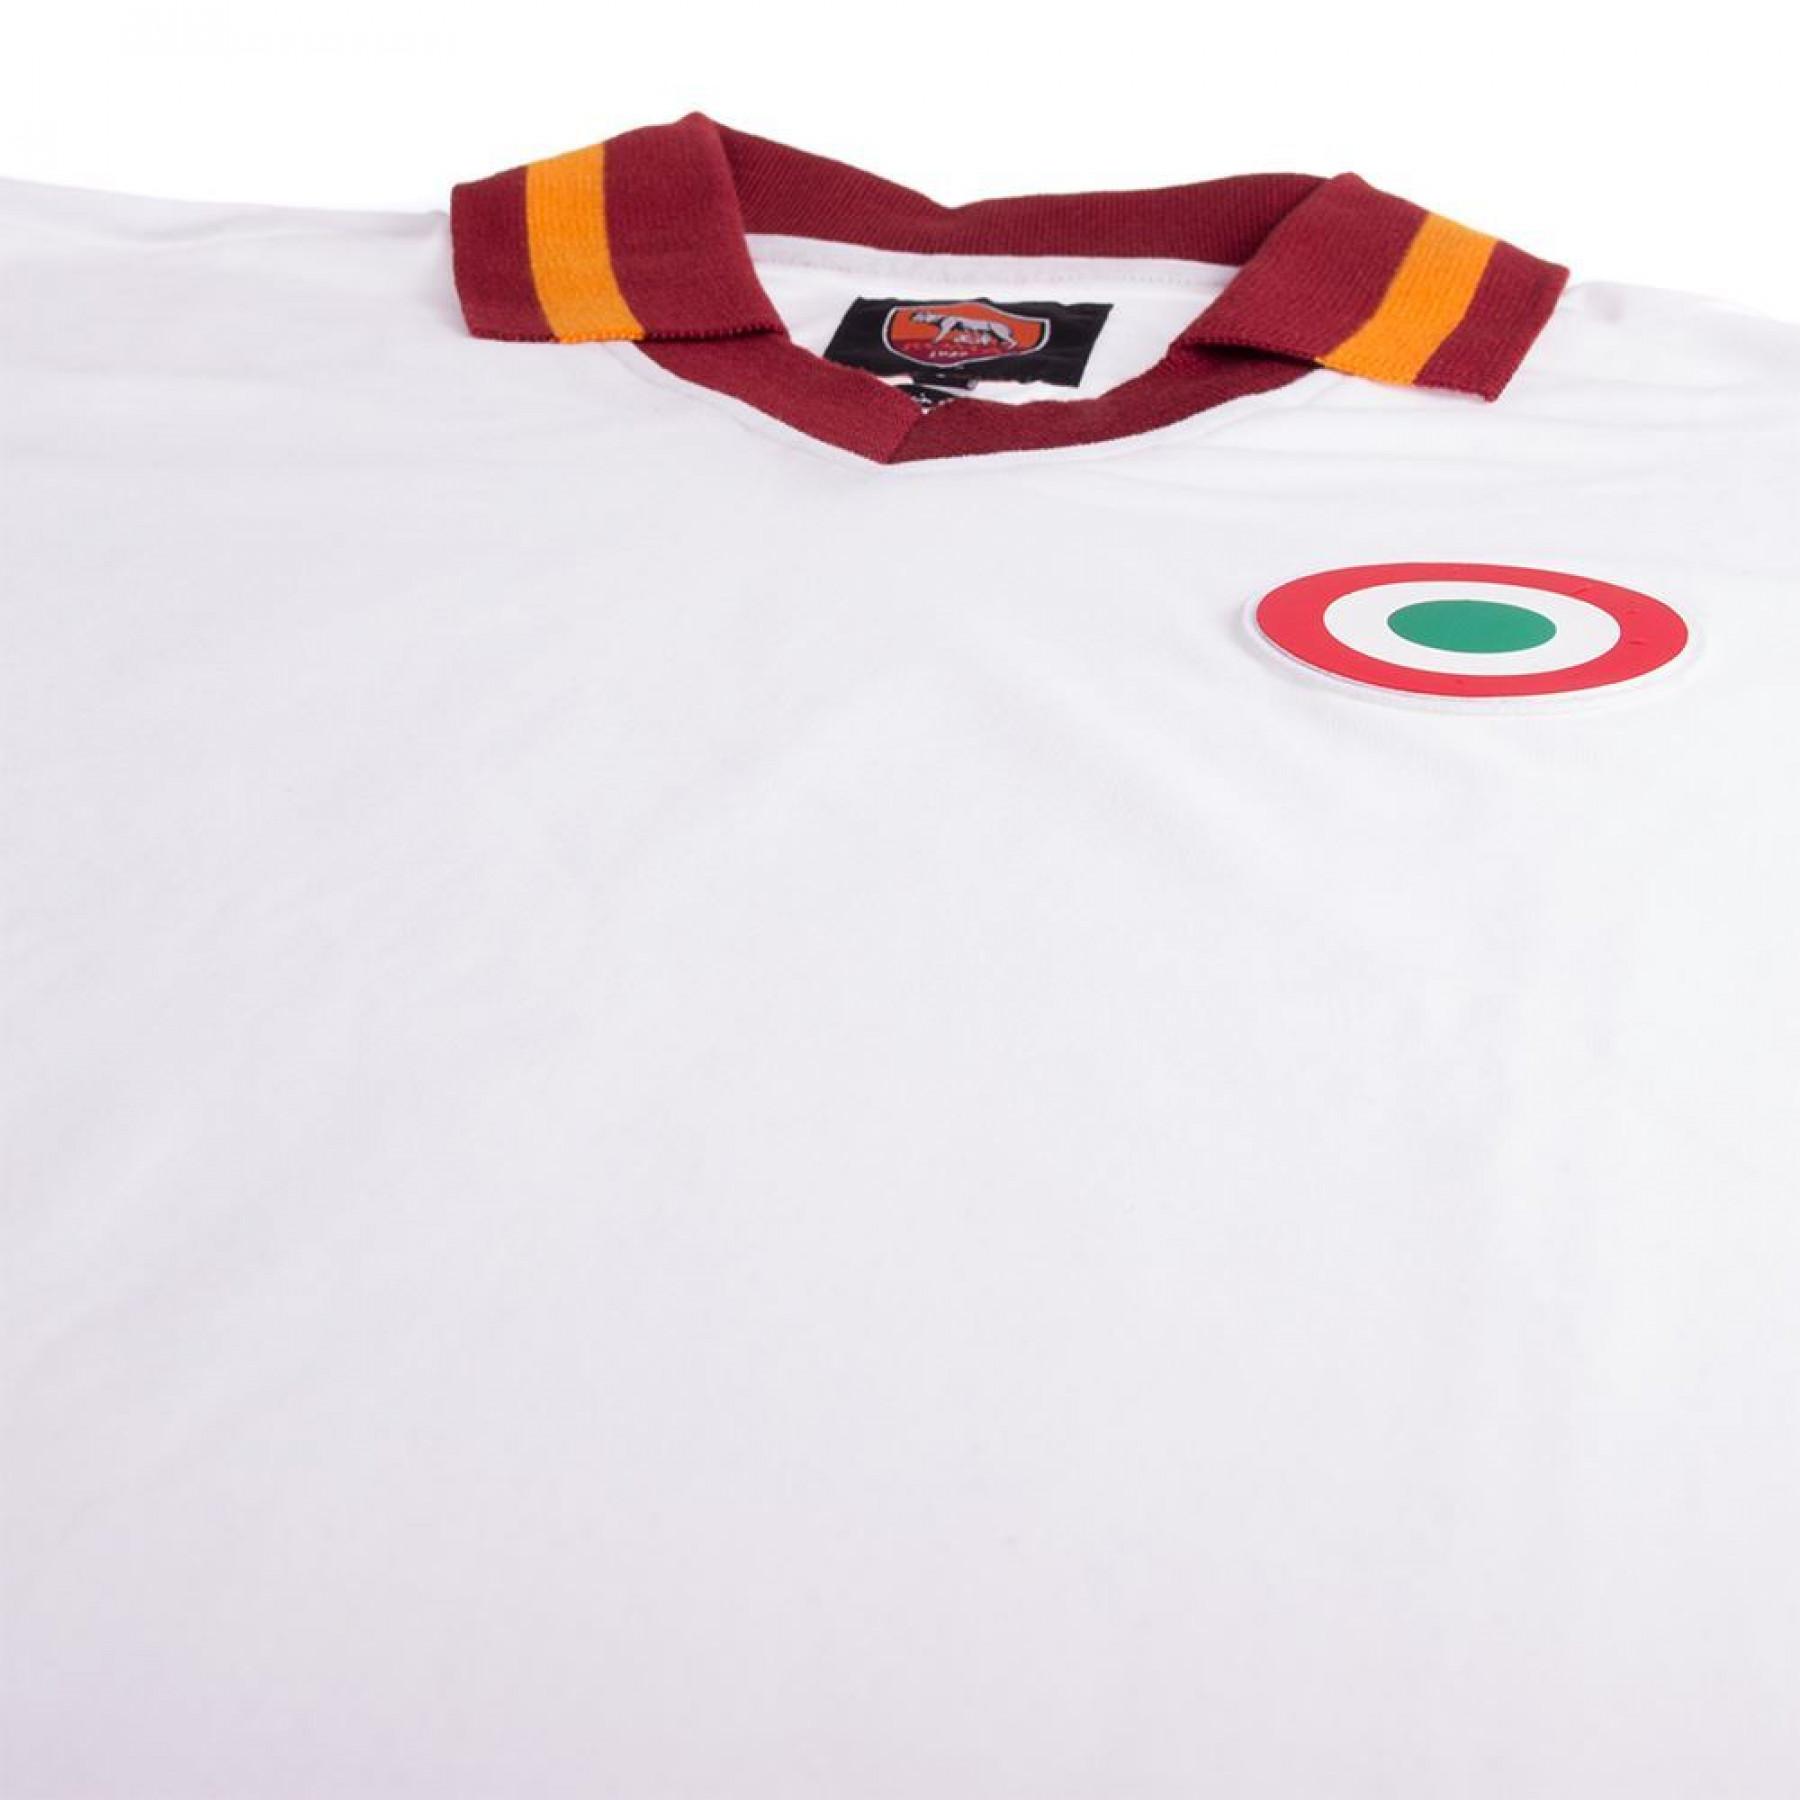 Uitshirt AS Roma 1980/1981